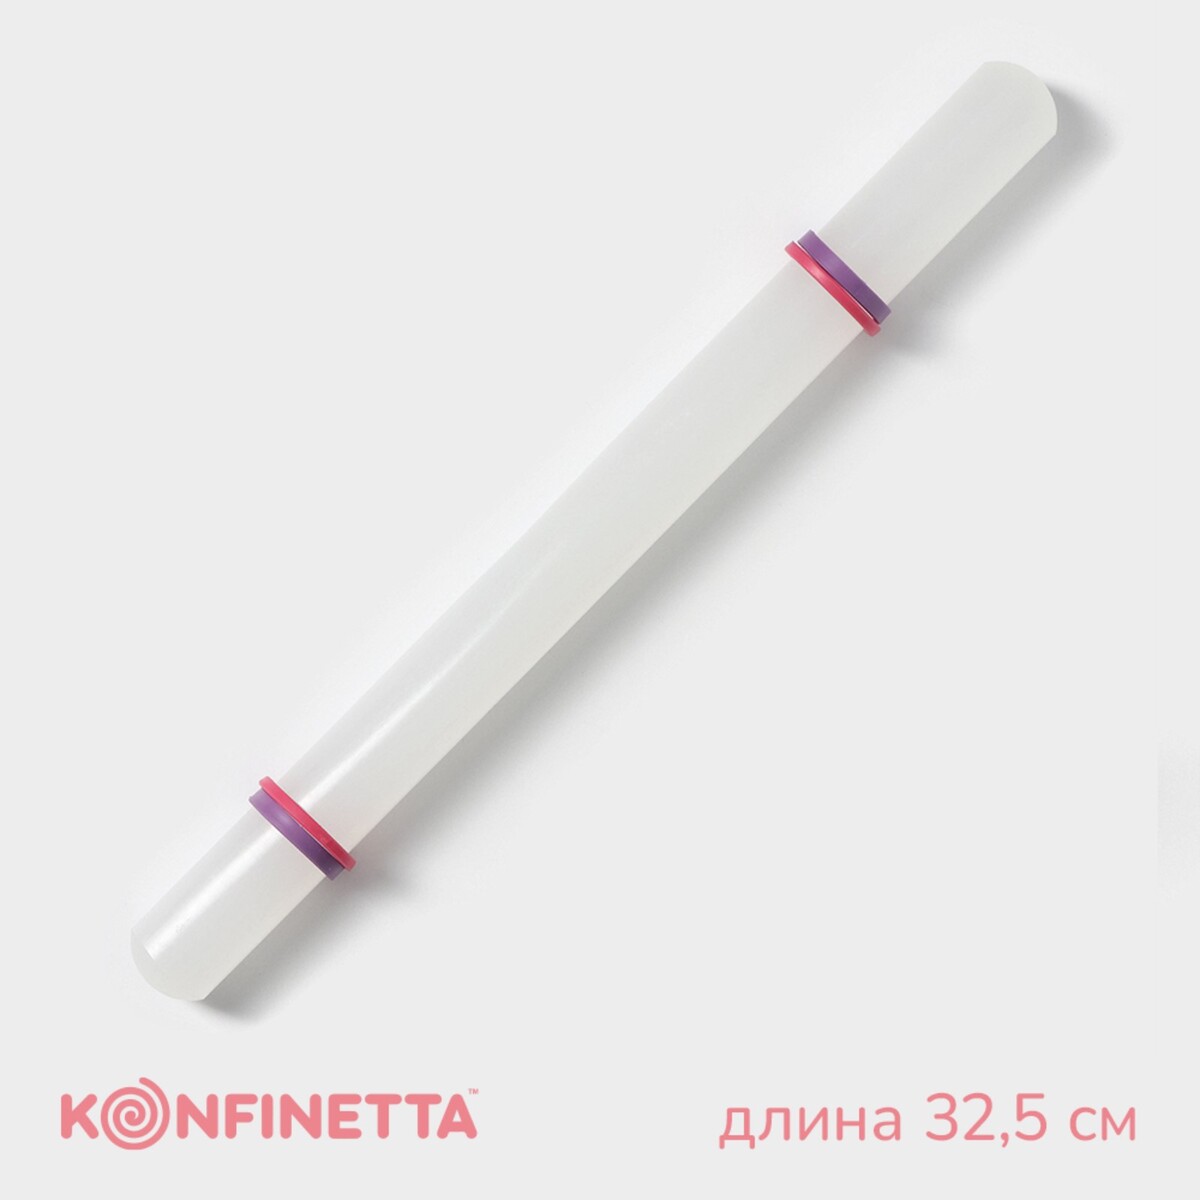 Скалка с ограничителями кондитерская konfinetta, 32,5 см, цвет белый